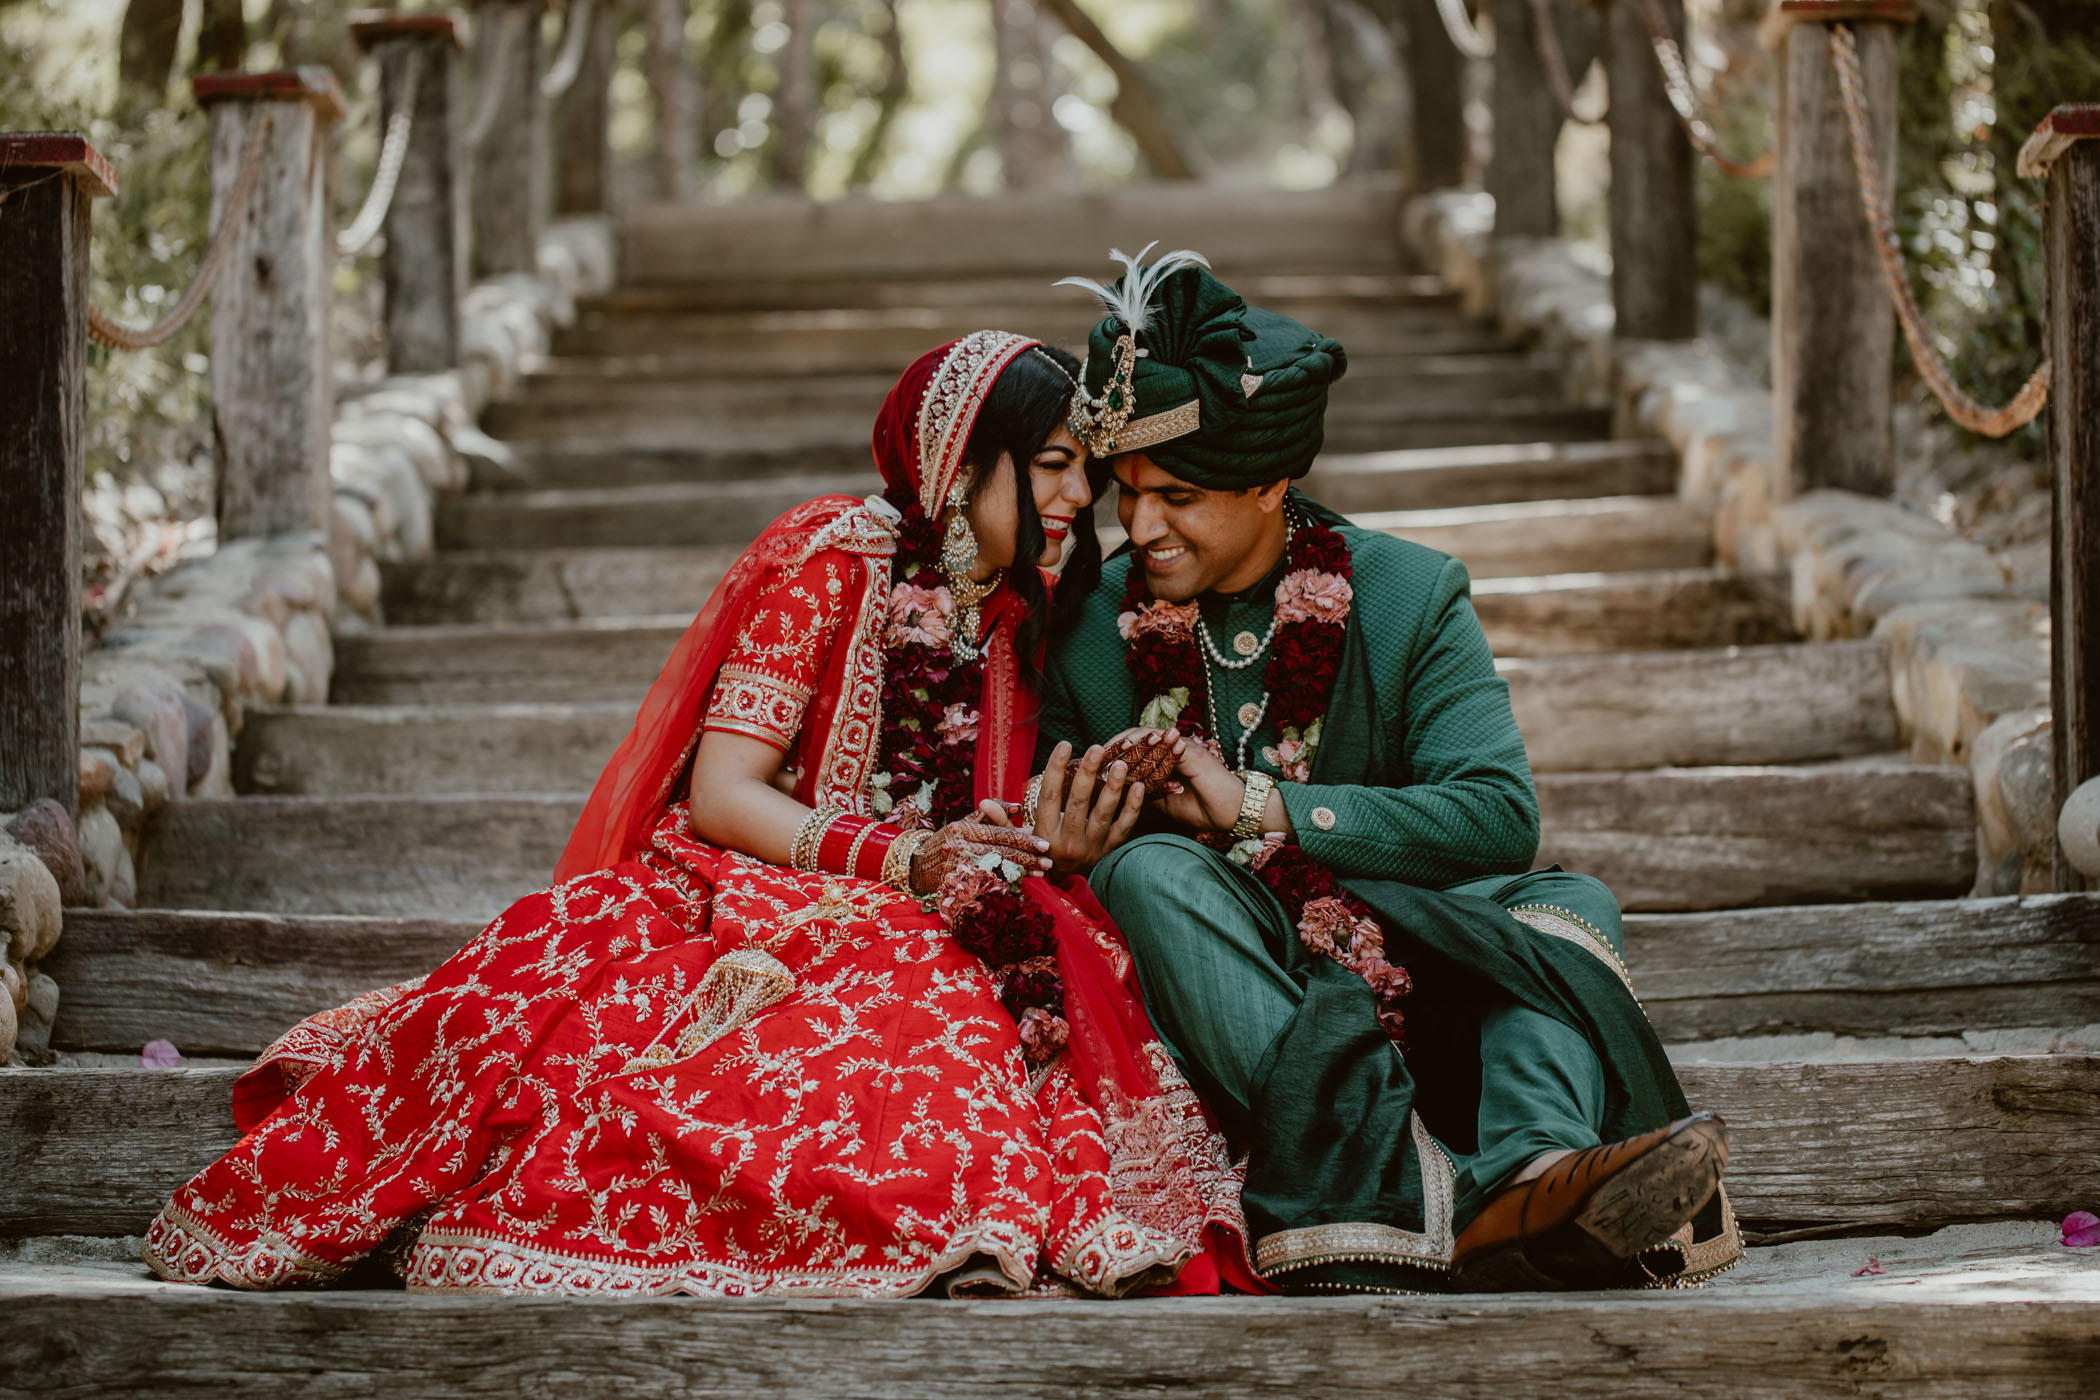 Boho Glam Inspired Indian Wedding